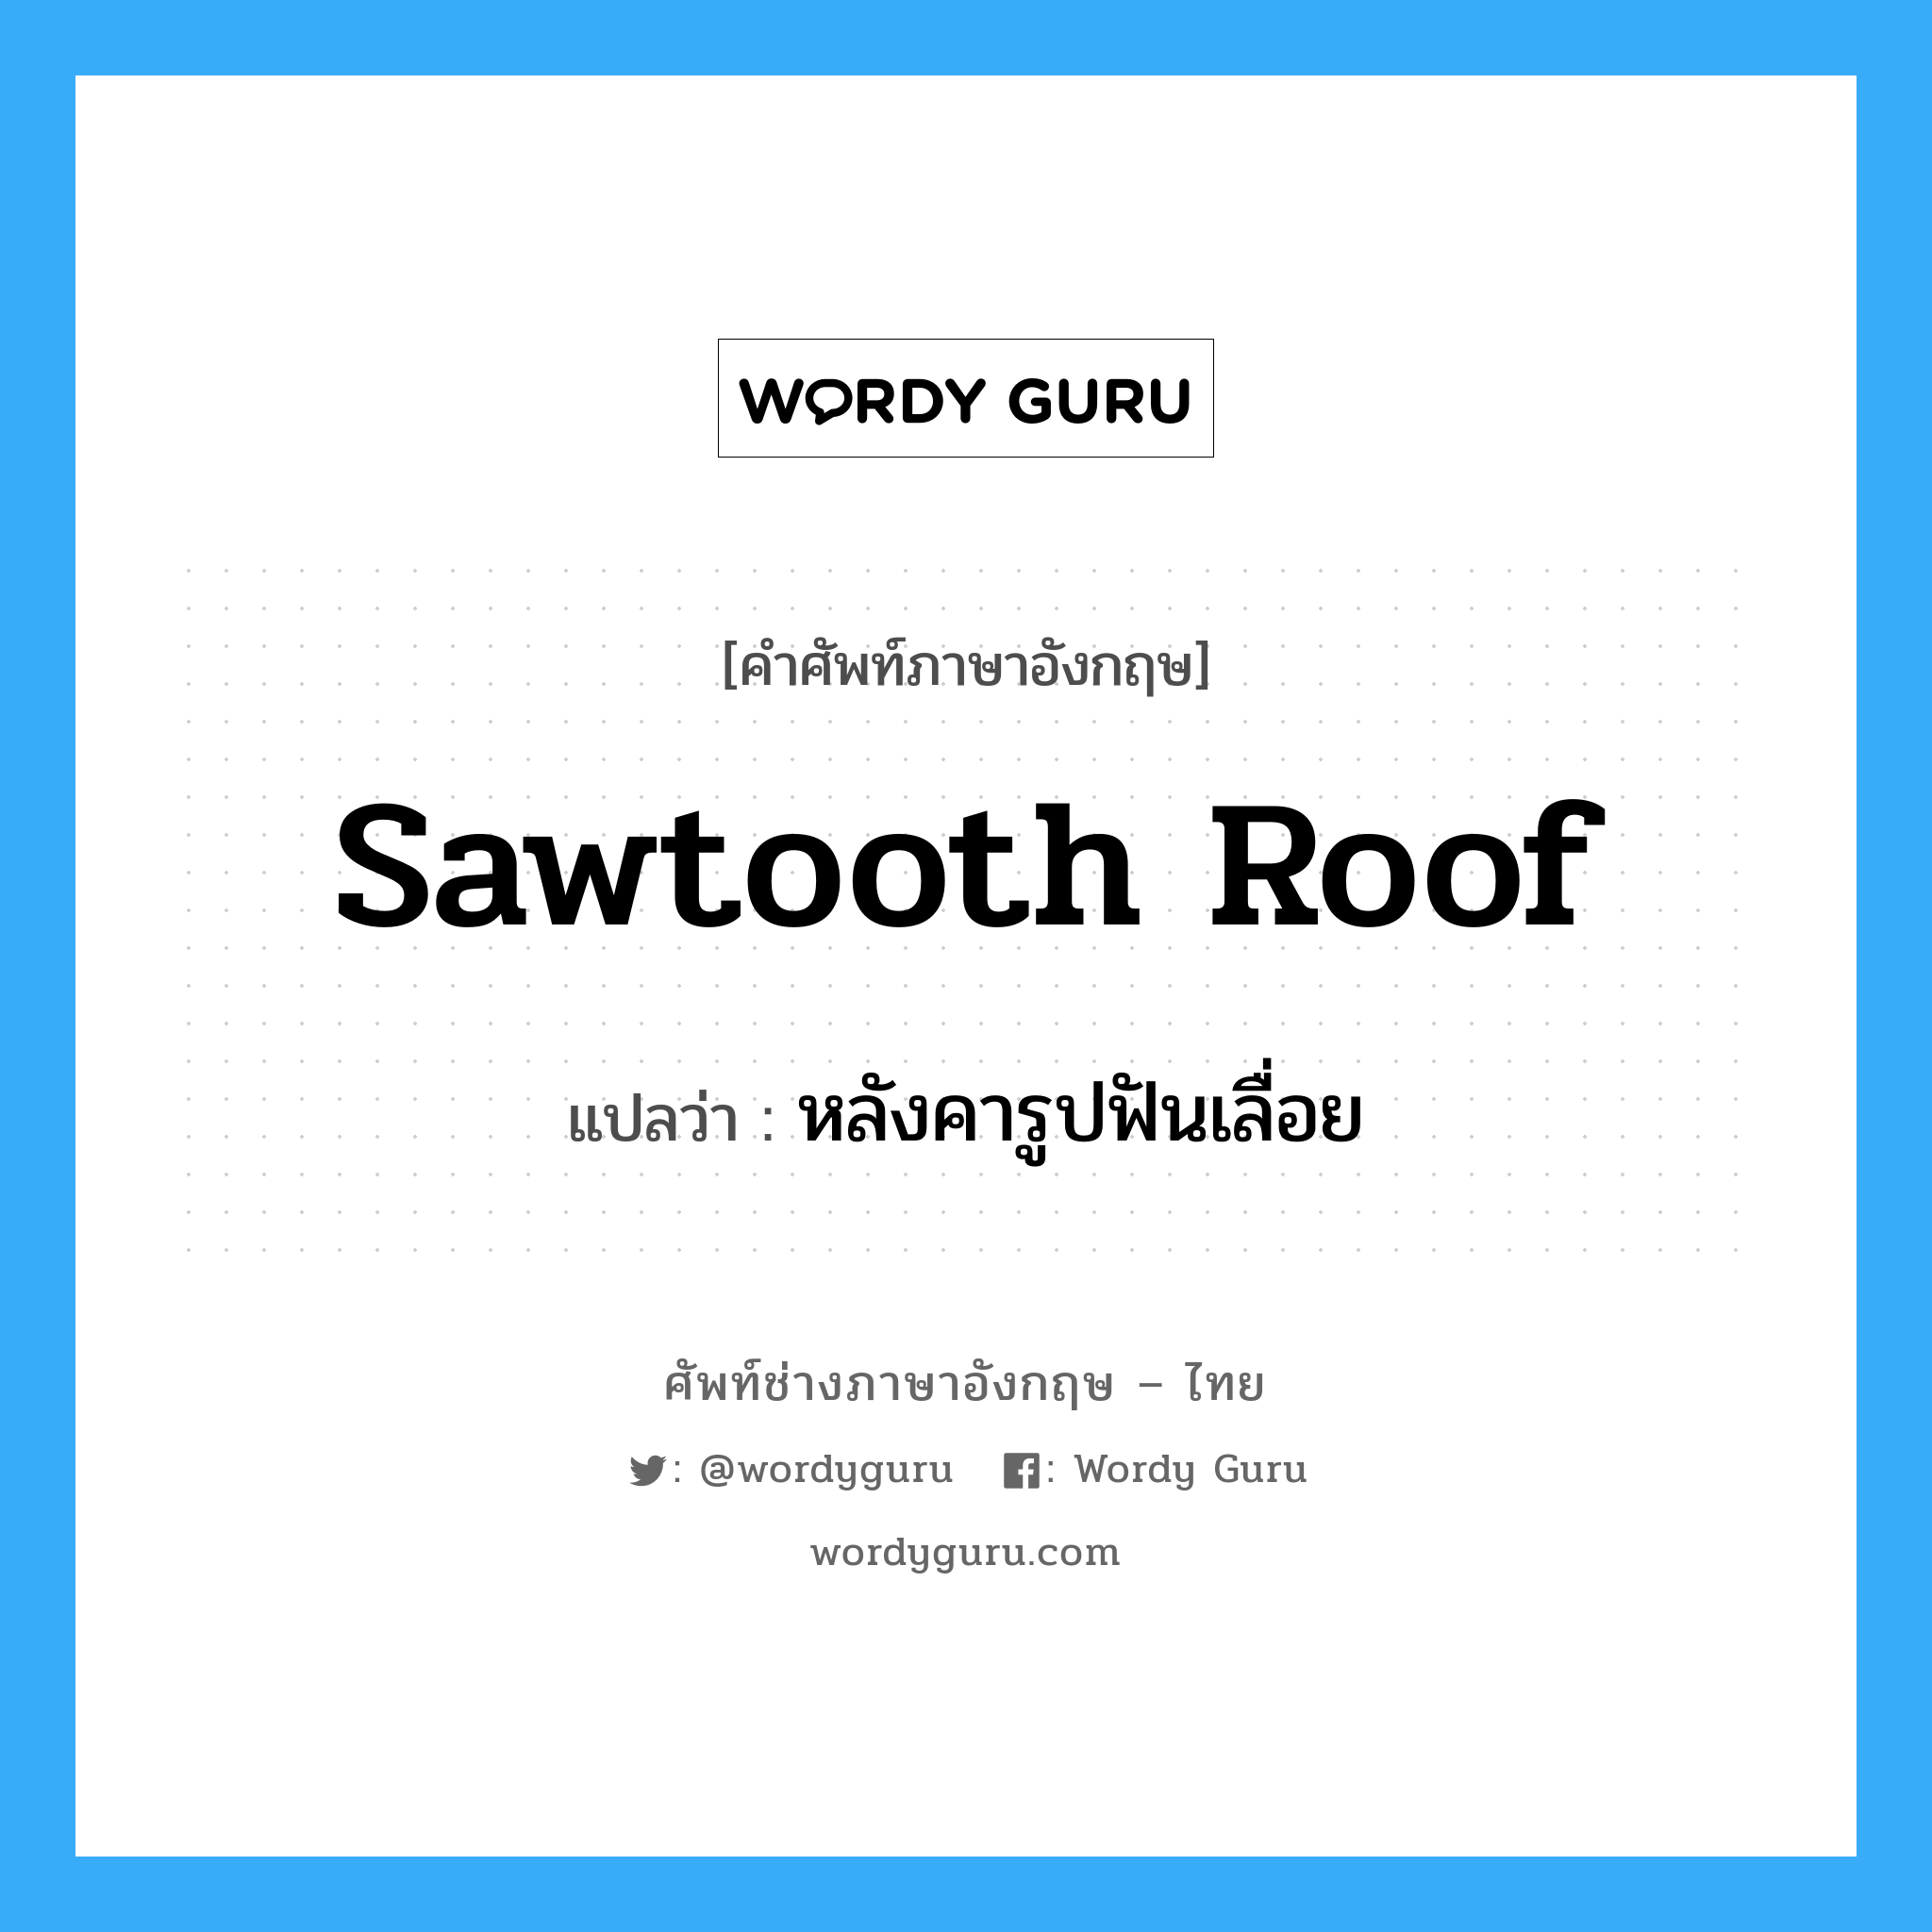 sawtooth roof แปลว่า?, คำศัพท์ช่างภาษาอังกฤษ - ไทย sawtooth roof คำศัพท์ภาษาอังกฤษ sawtooth roof แปลว่า หลังคารูปฟันเลื่อย